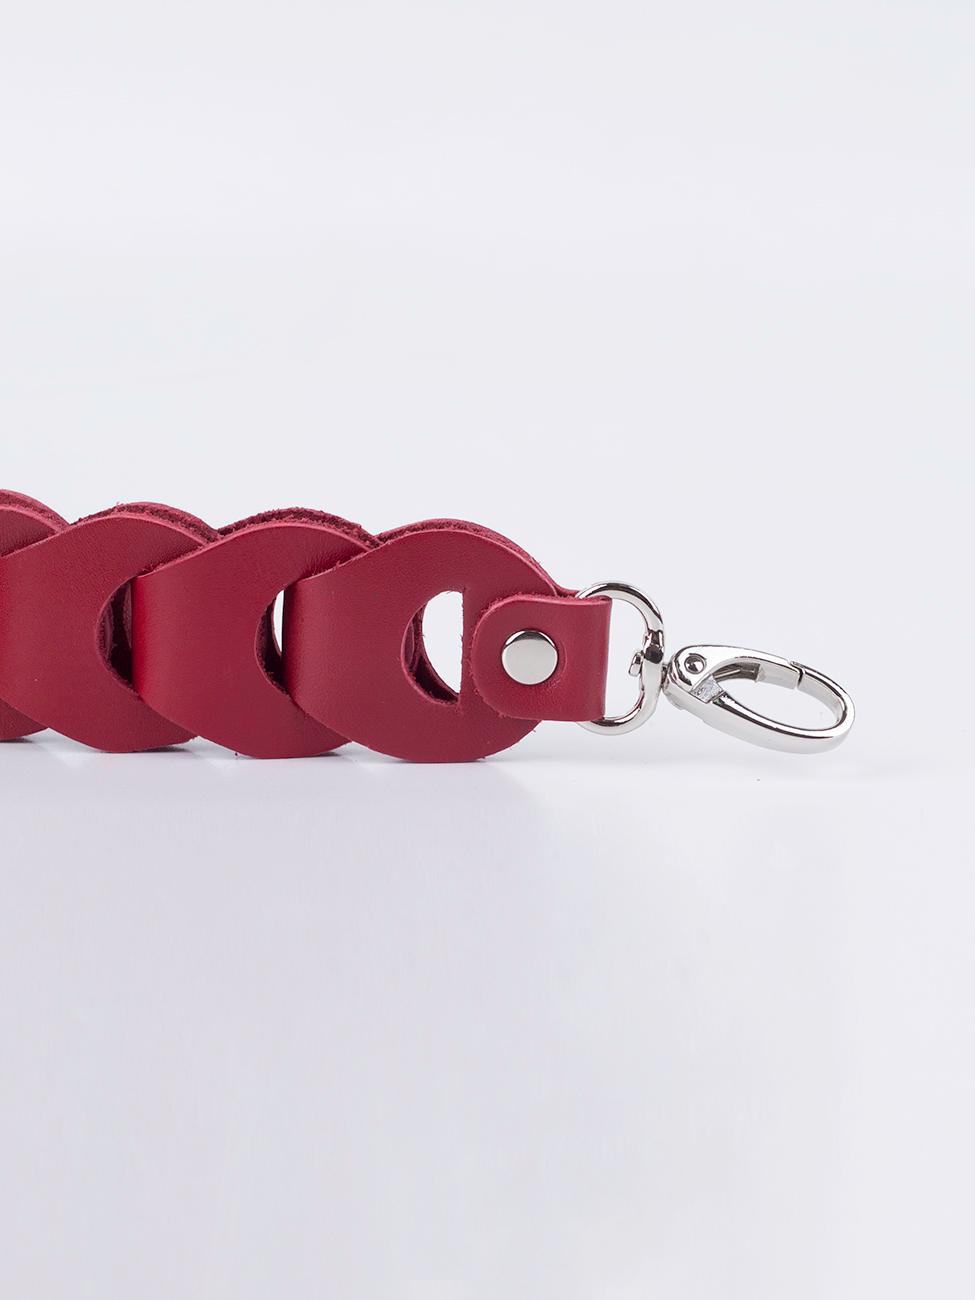 Плечевой ремень для сумки красный T001 ruby